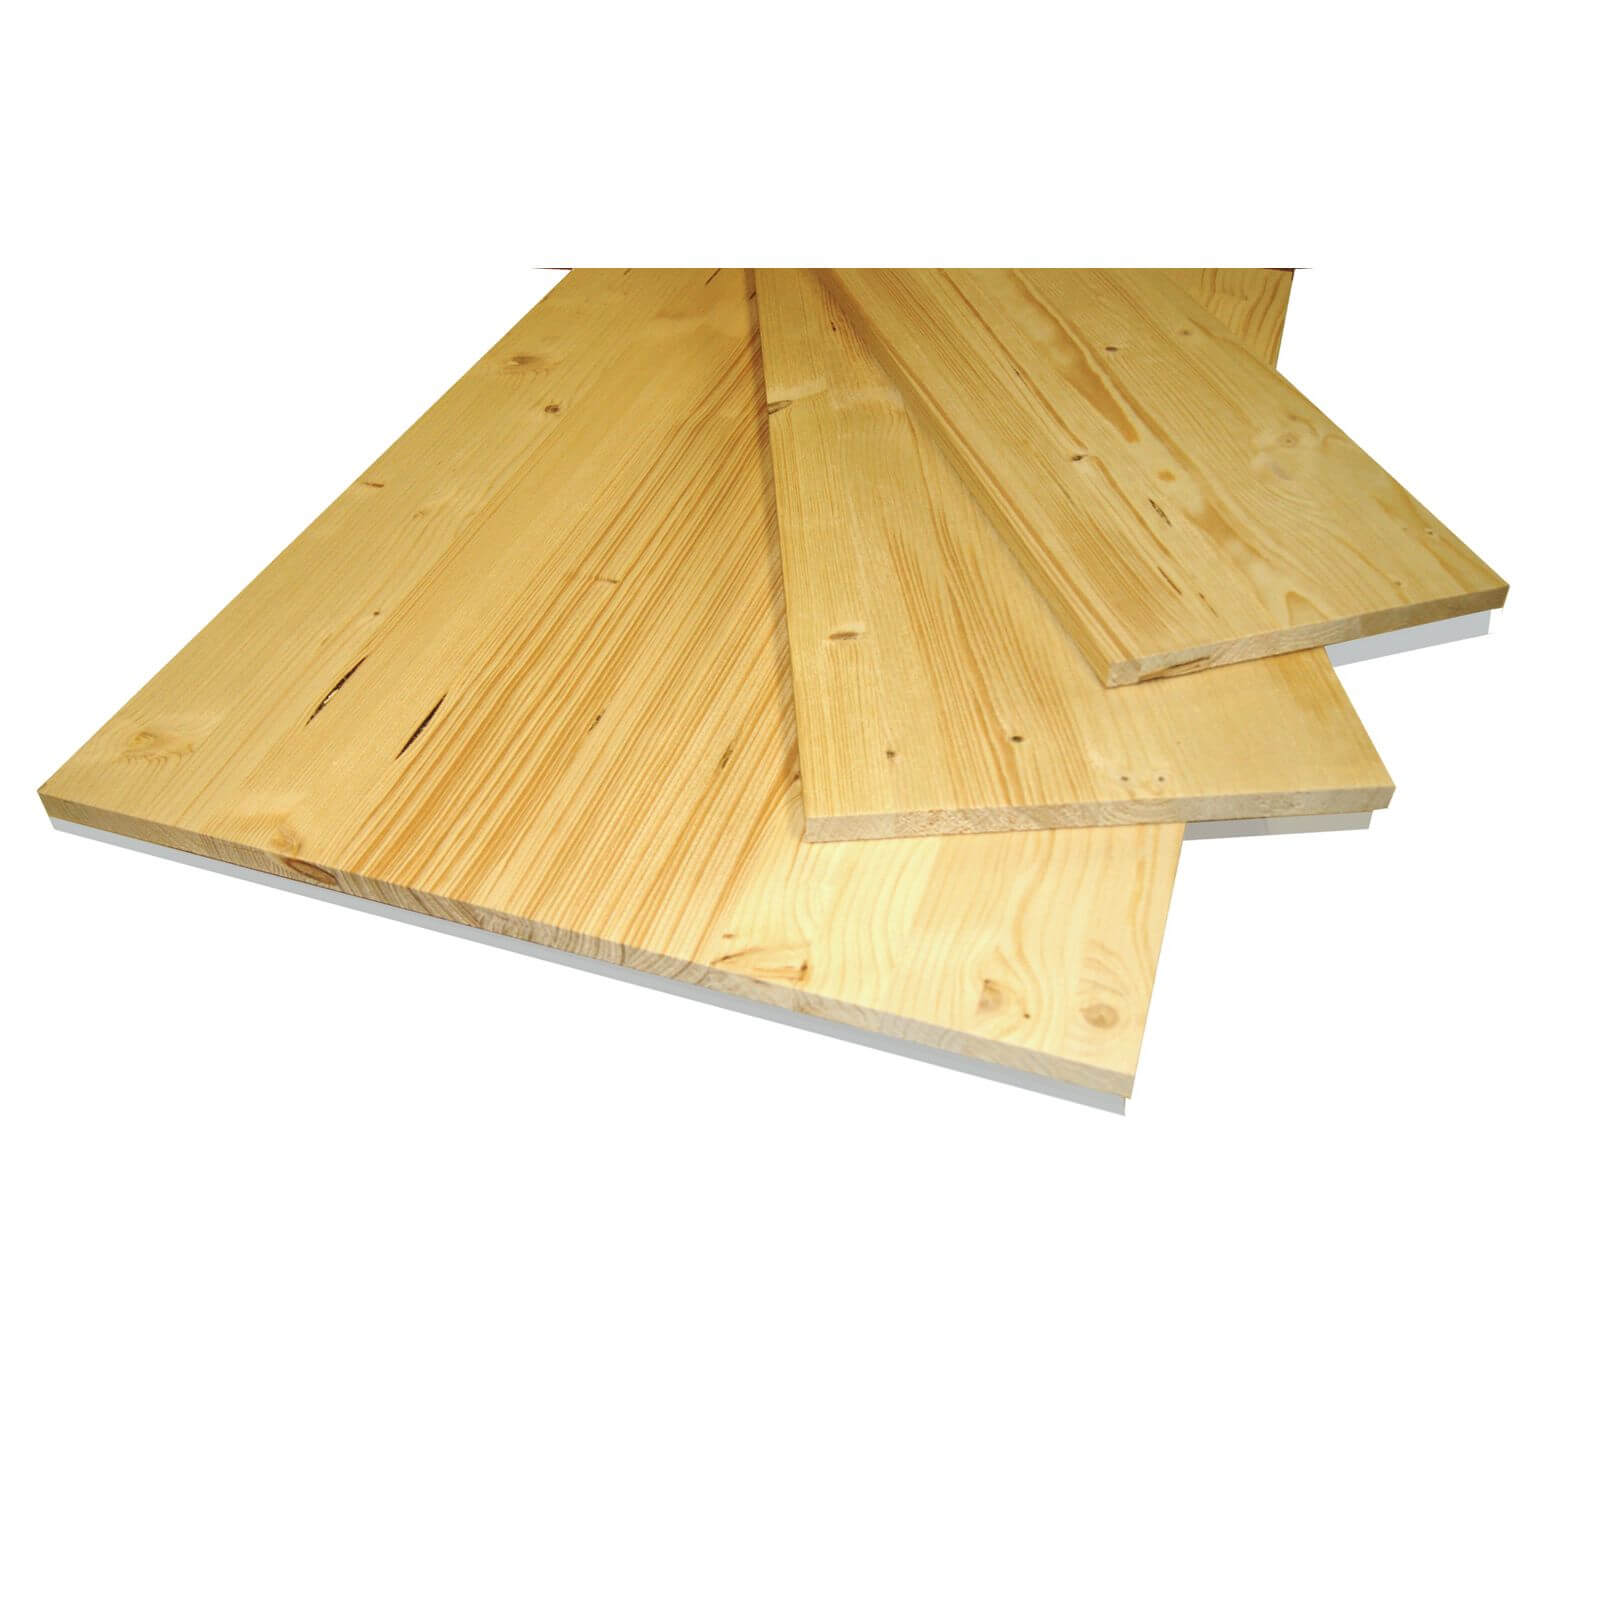 Metsa Wood Solid Spruce Wooden Panel Board 1.15m (18 x 200 x 1150mm)